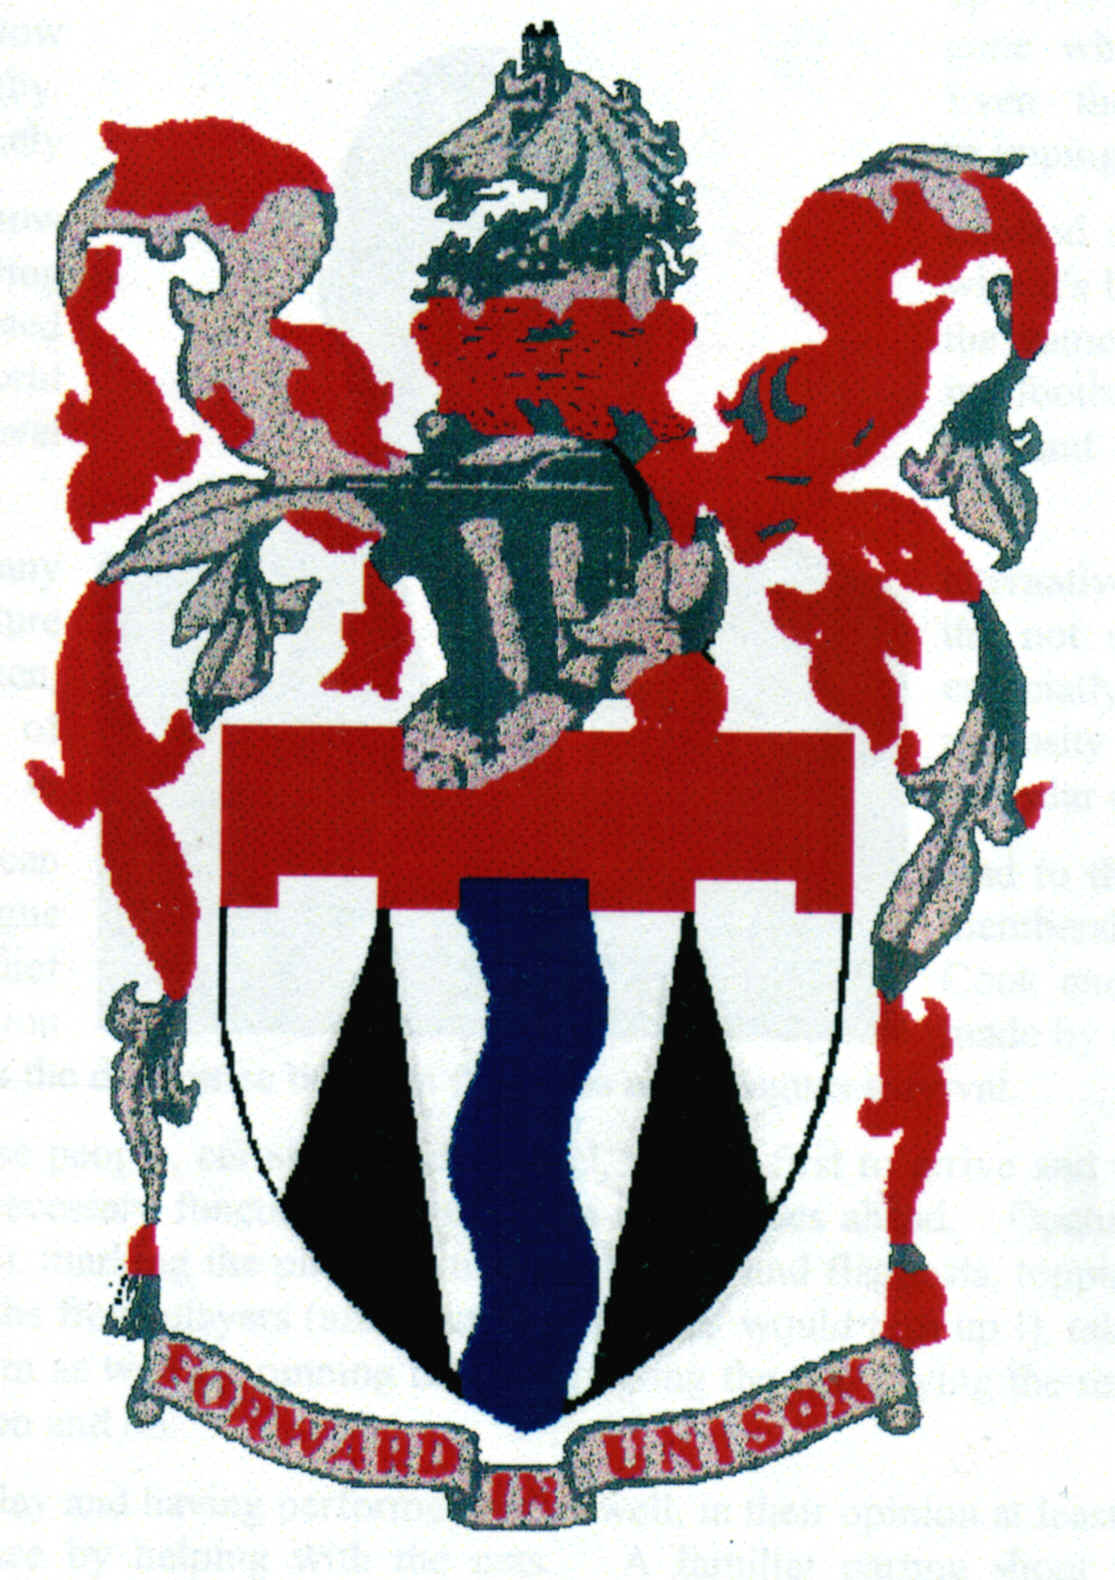 Tonbridge & District logo